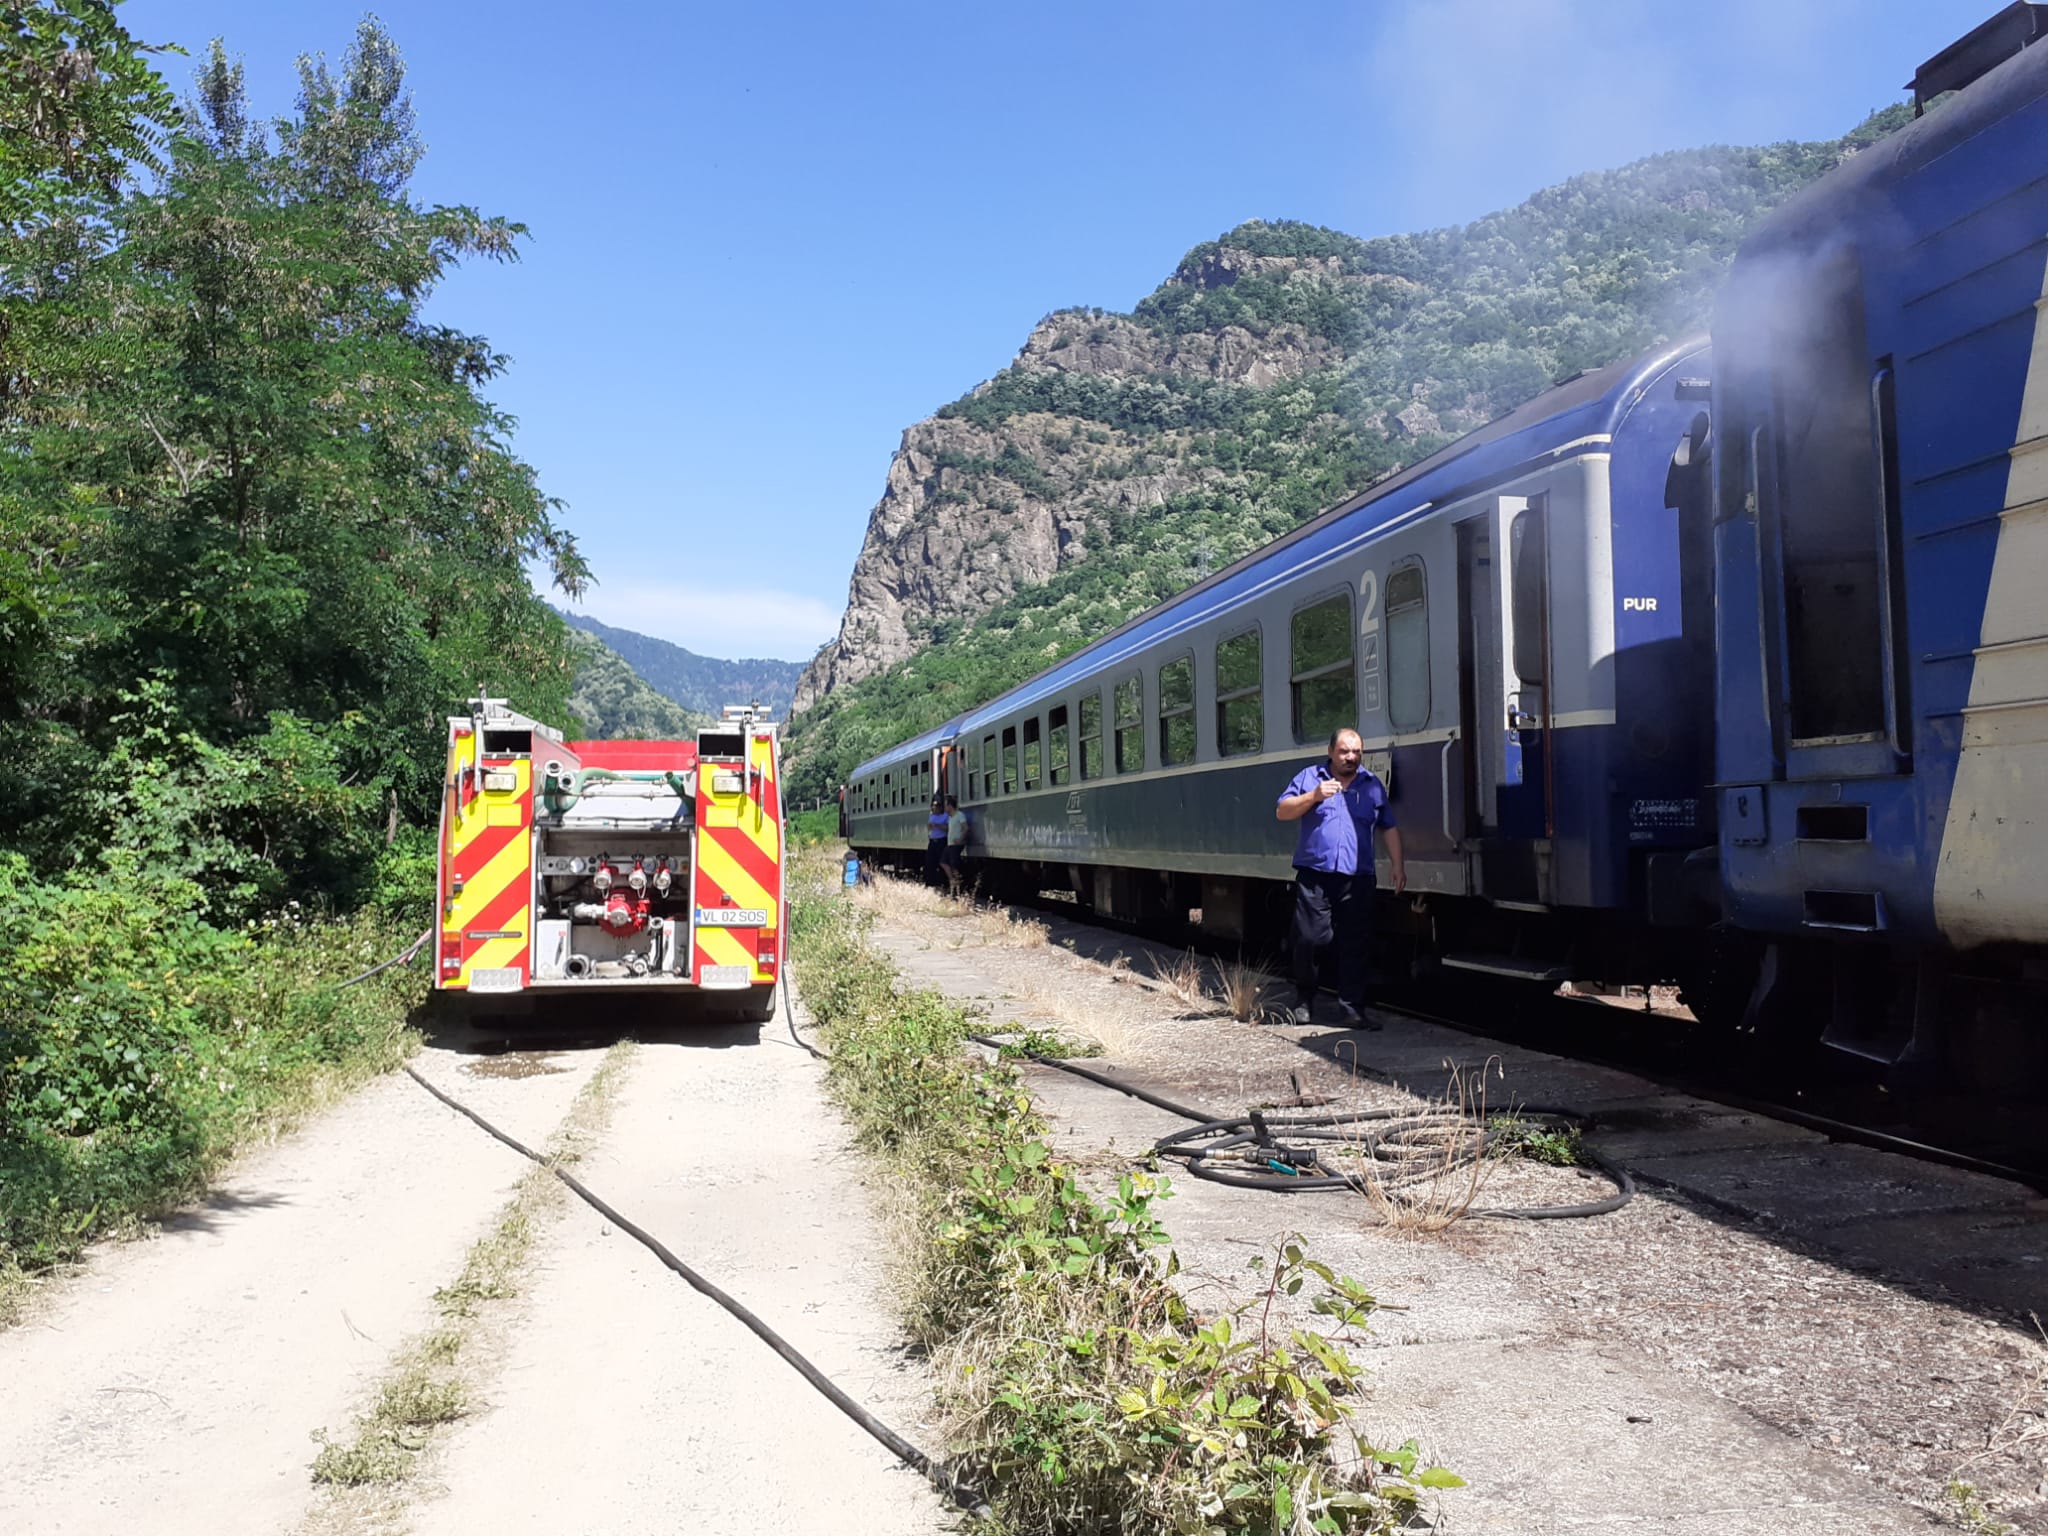 Zeci de pasageri ai unui tren, evacuaţi din cauza unui incendiu izbucnit la locomotivă, în Vâlcea | FOTO